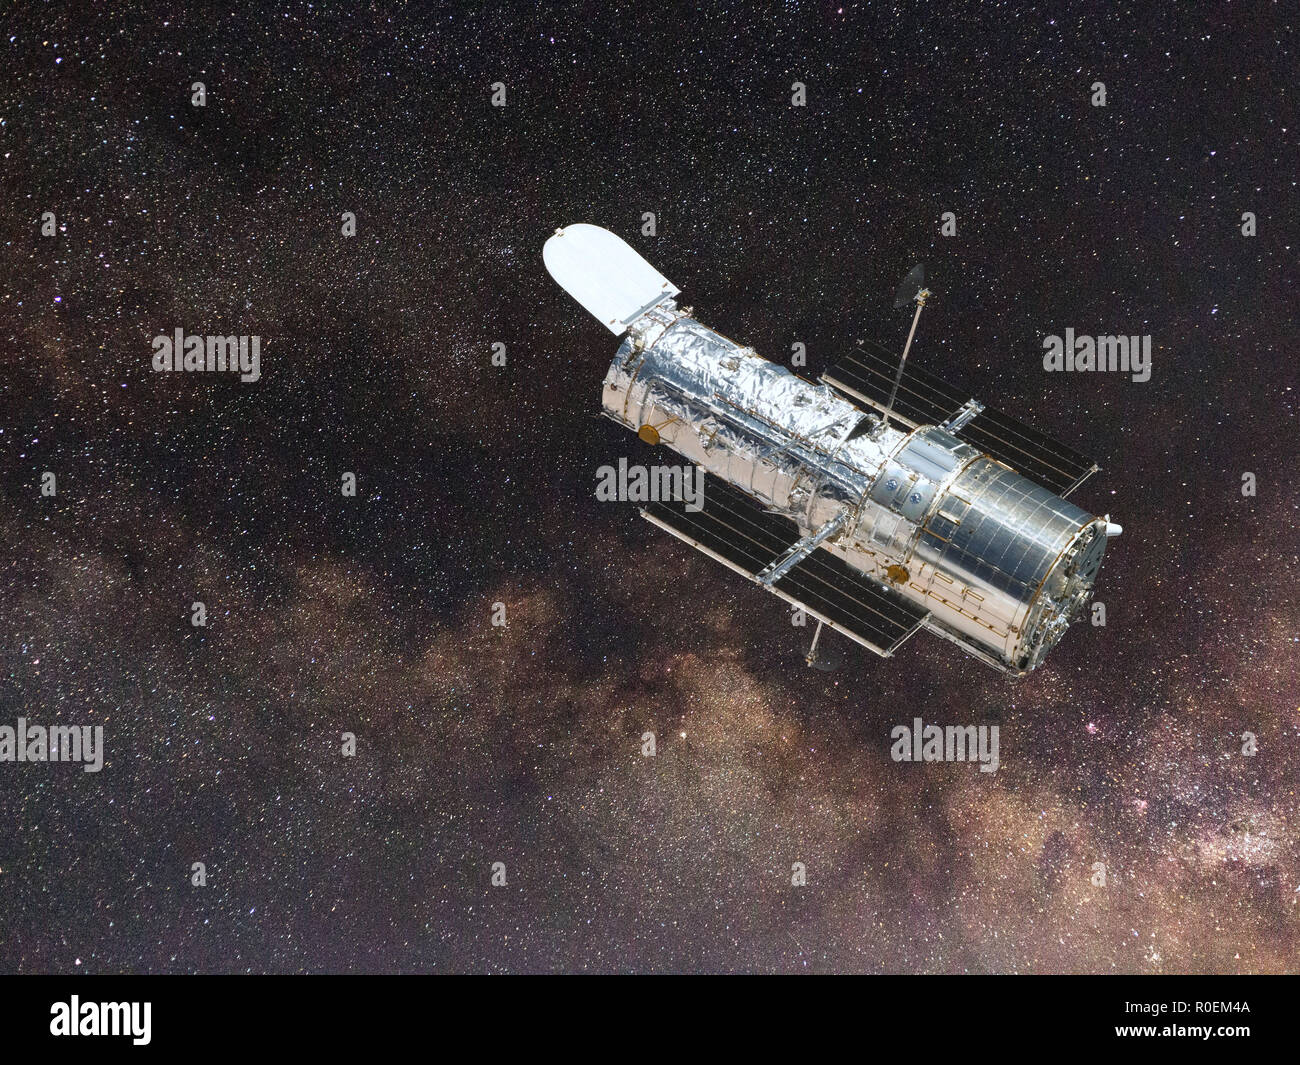 Telescopio Spaziale Hubble osservando un campo a stella Foto Stock